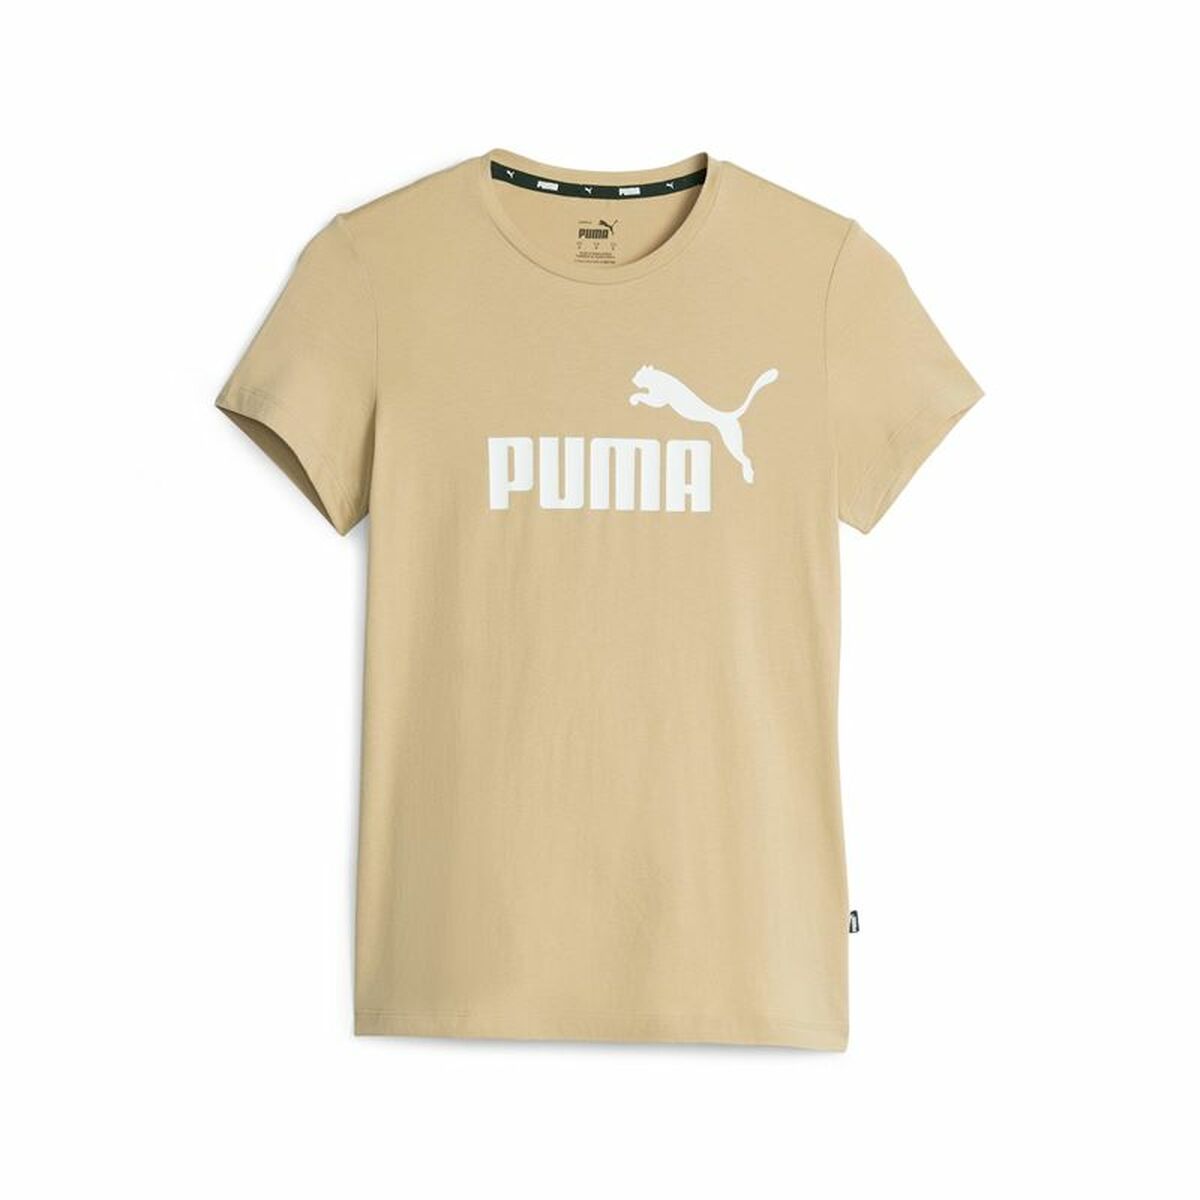 Damen Kurzarm-T-Shirt Puma Ess Logo Beige